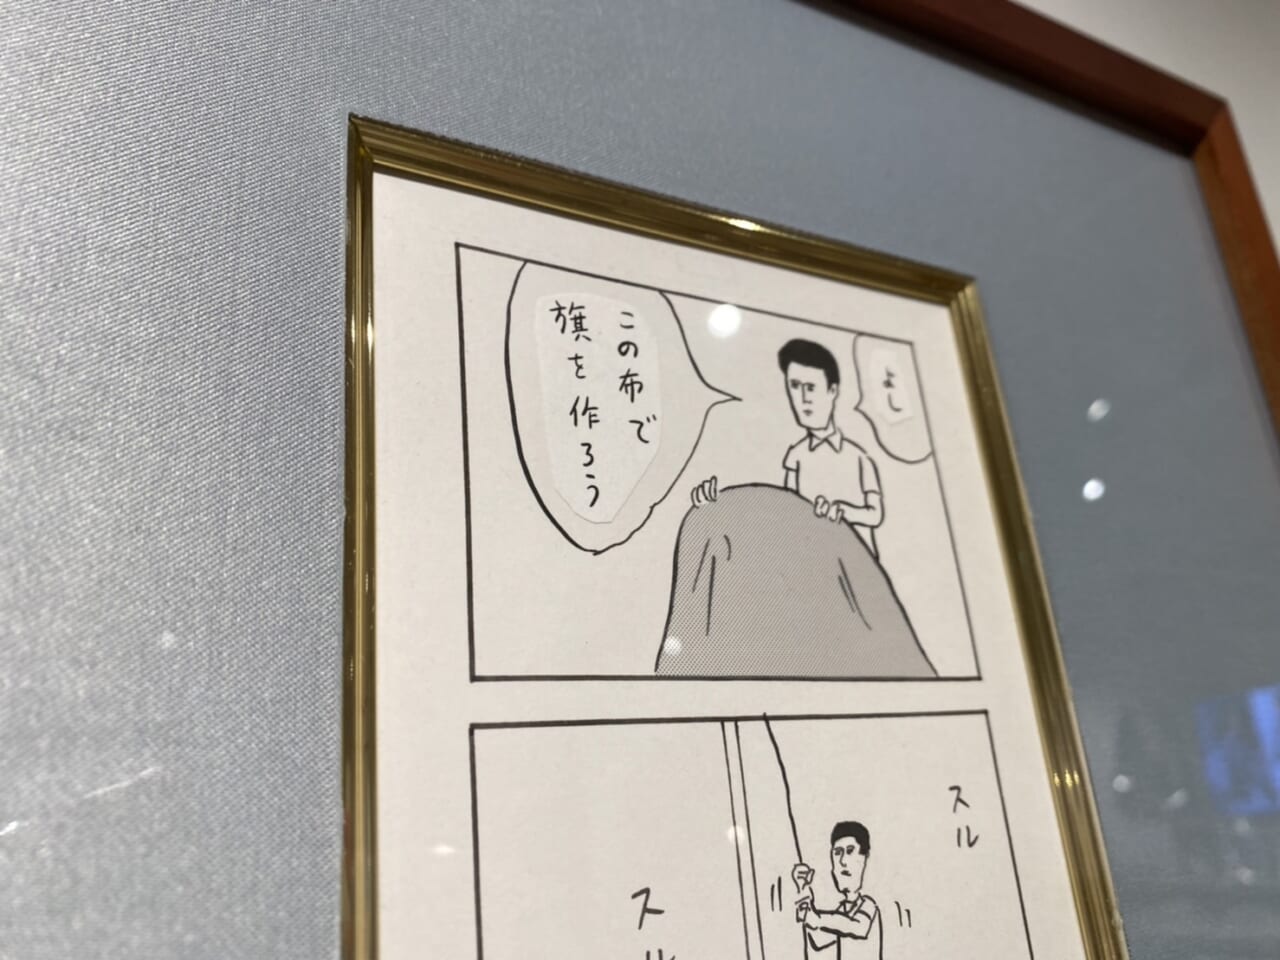 和田ラヂヲ先生による「アート・シマツ」をテーマにした４コマ漫画の手描き原画を額装。（作品周囲の部分がカーテンです）もちろん１点ものです。33000円（税込）